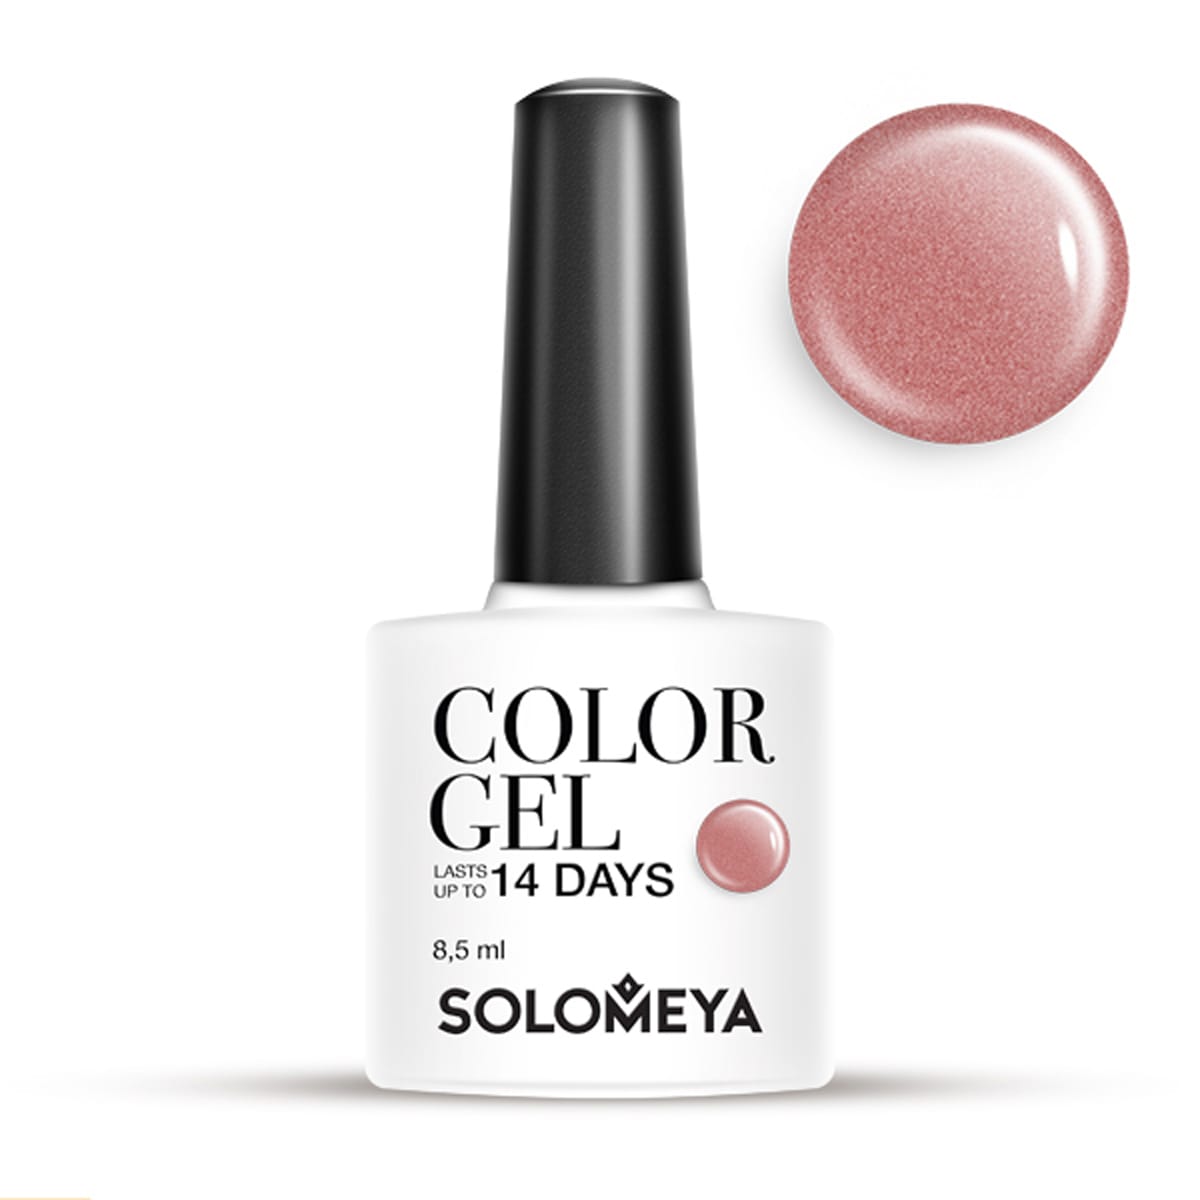 SOLOMEYA Гель-лак для ногтей SCG155 Капучино / Color Gel Cap